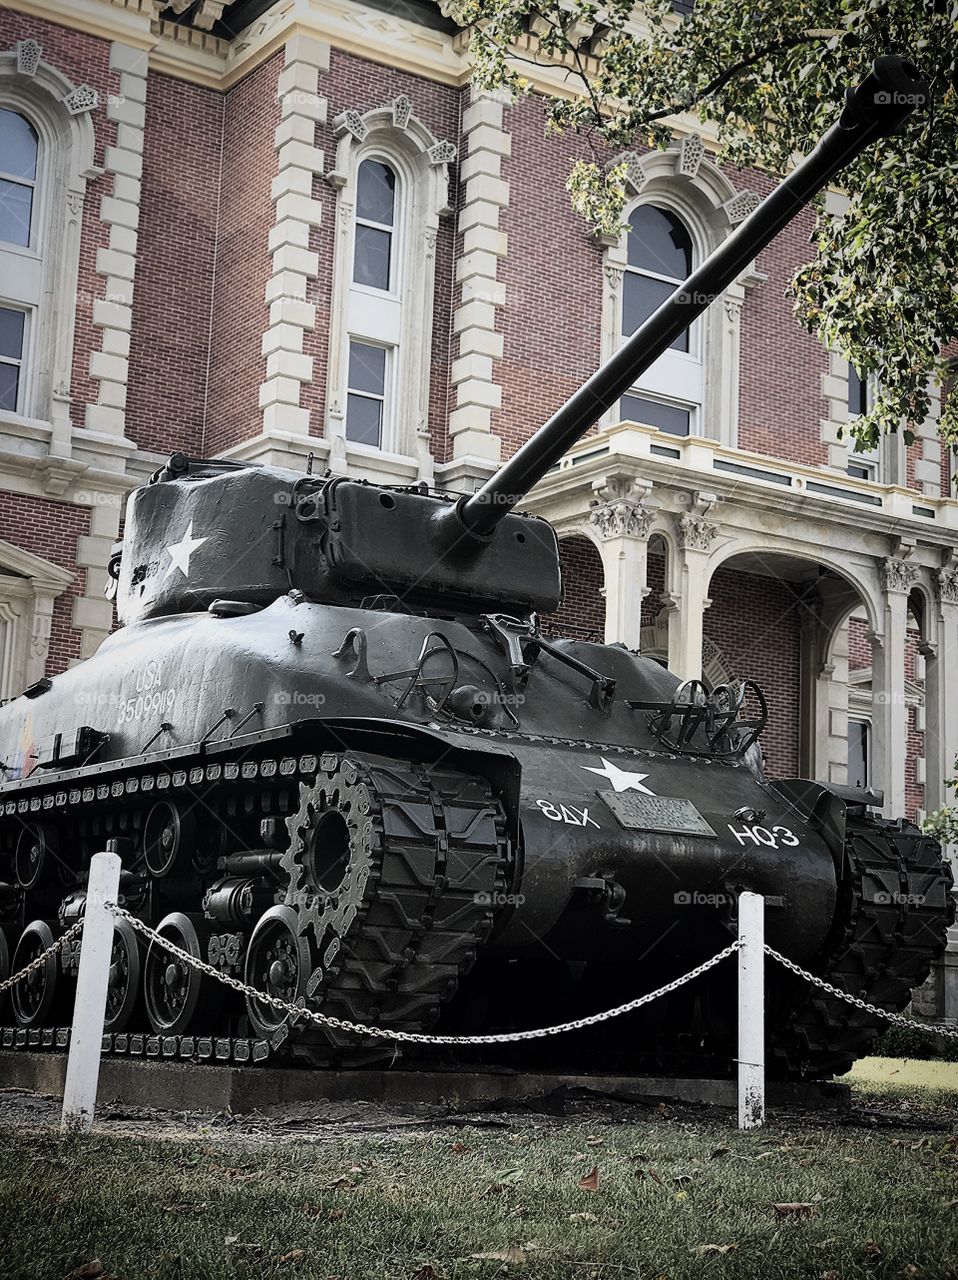 Old war tank